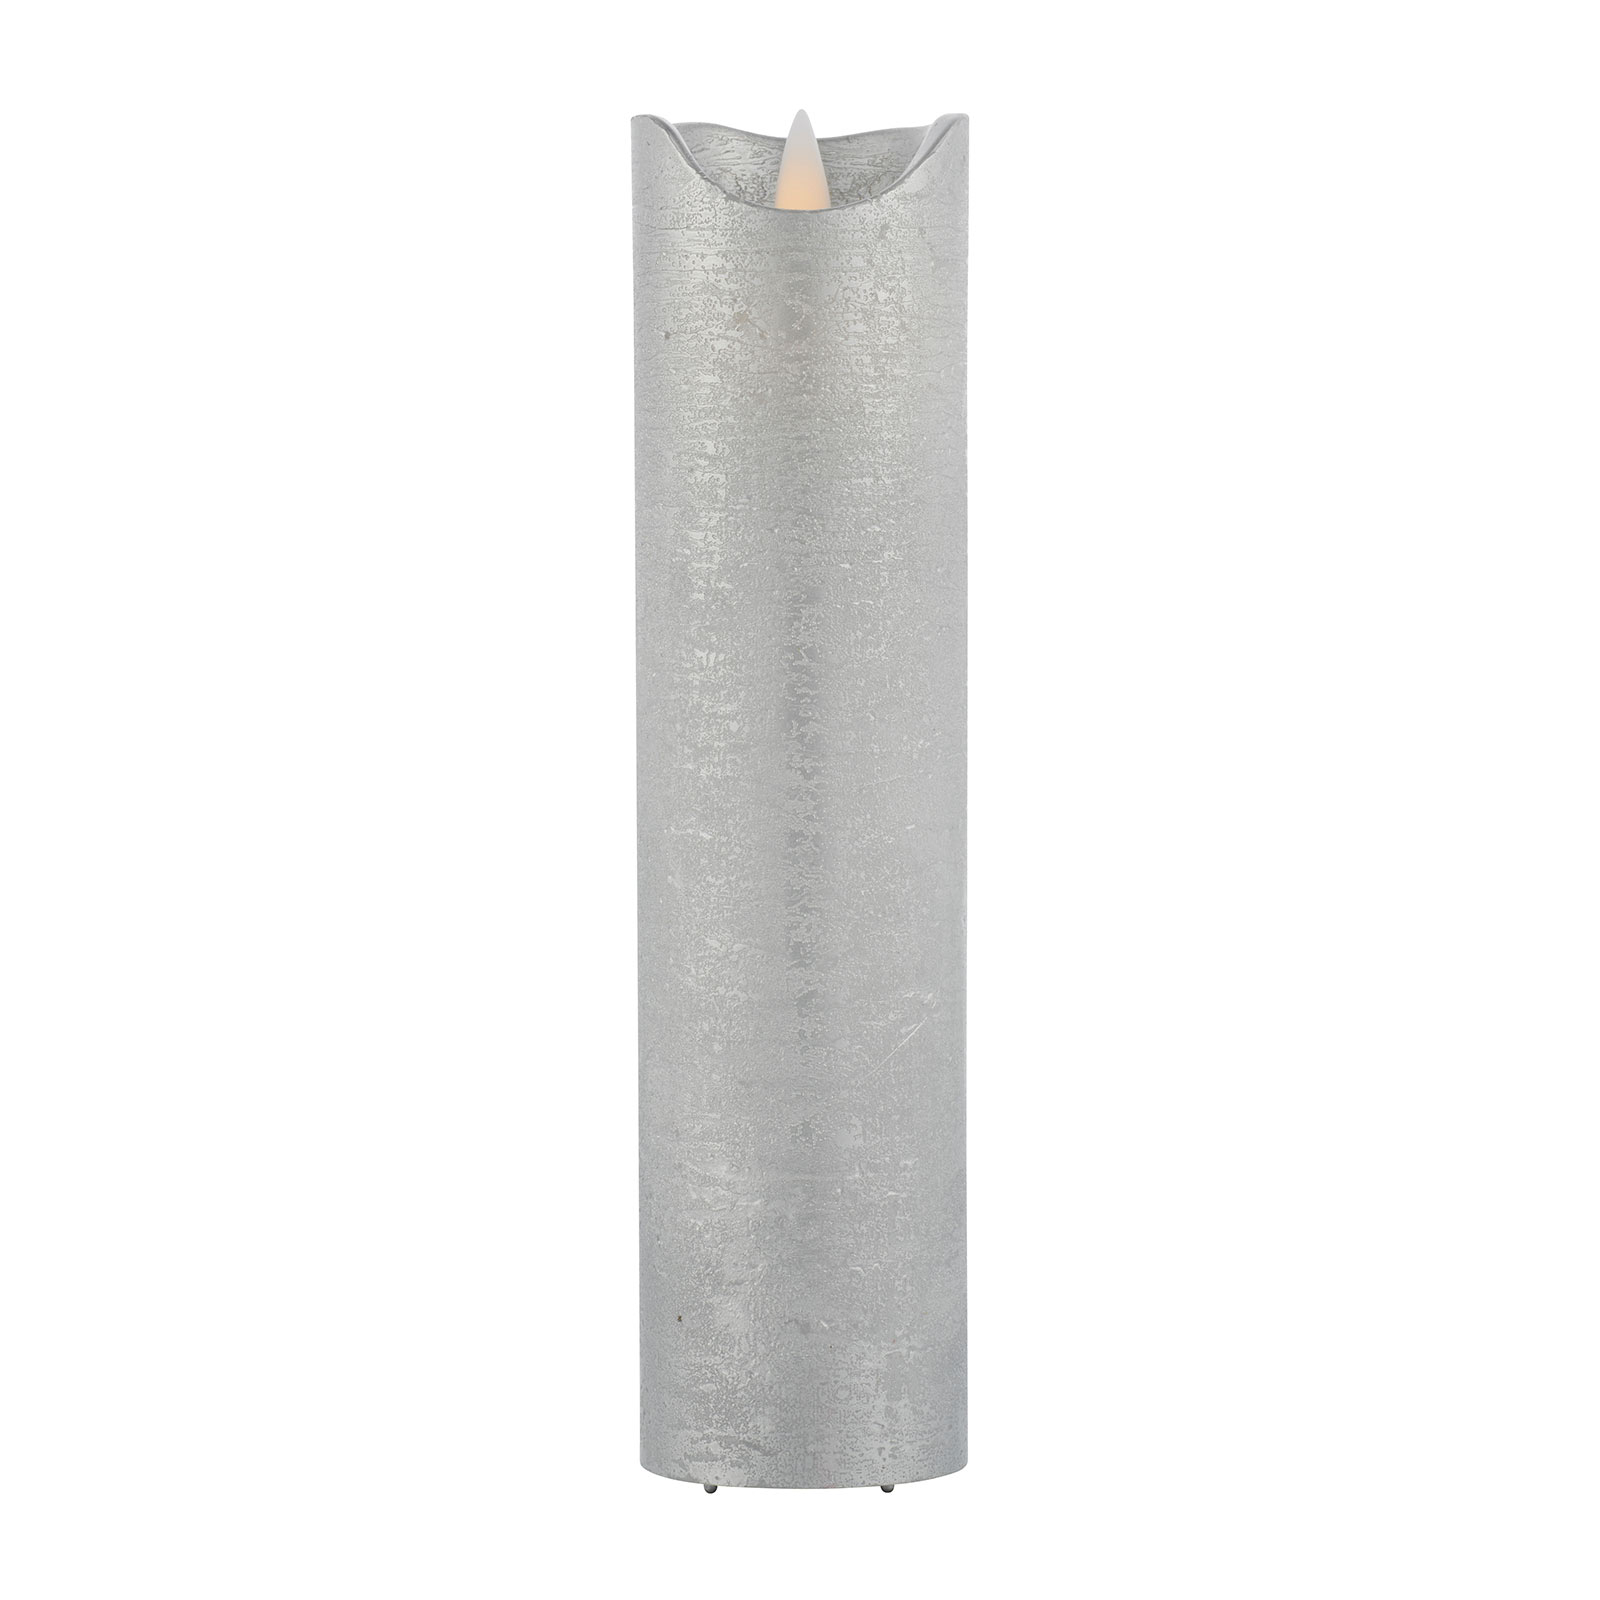 LED свещ Сара Exclusive, сребърна, Ø 5 см, височина 20 см